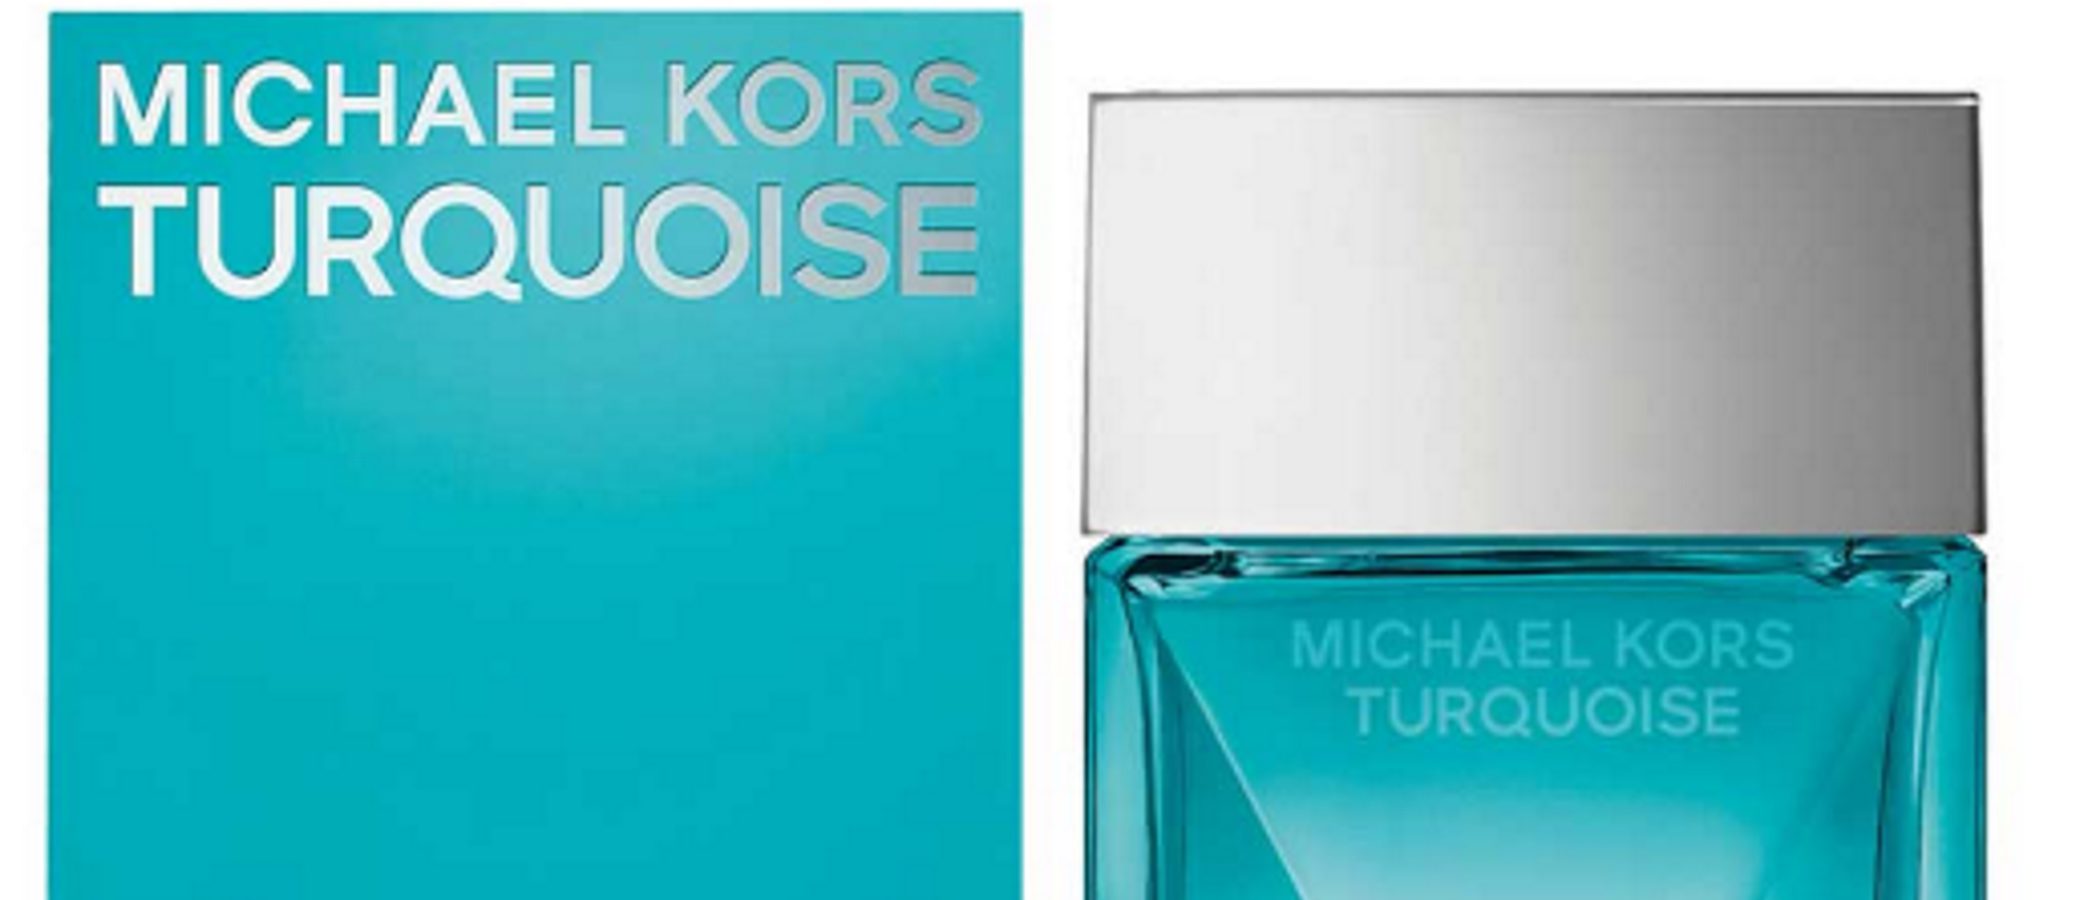 Espíritu libre y fresco: Michael Kors sorprende con su nueva edición limitada 'Turquoise'